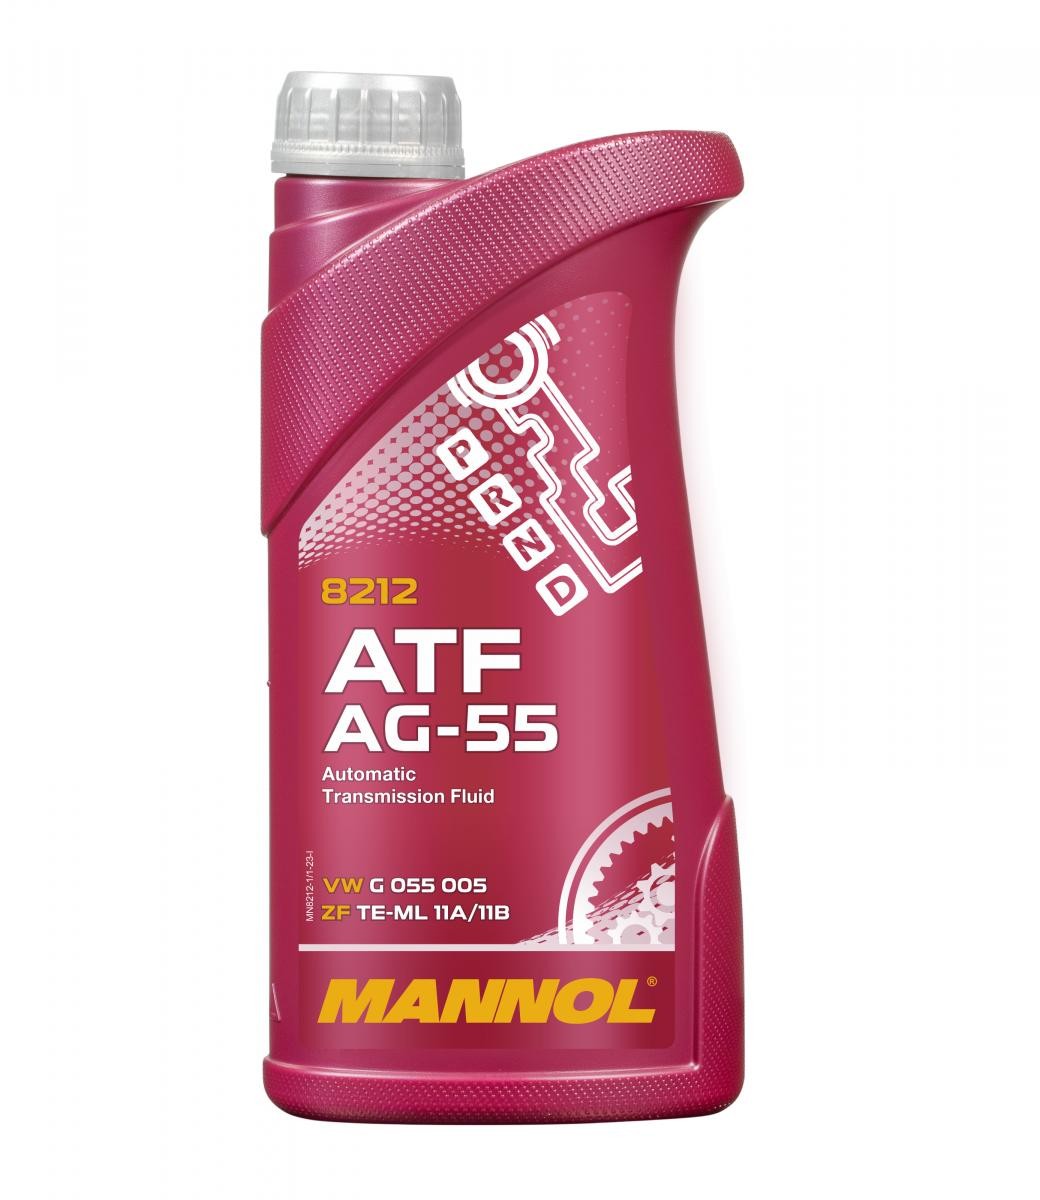 Chevy SPARK ATF Öl MANNOL MN8212-1 online kaufen